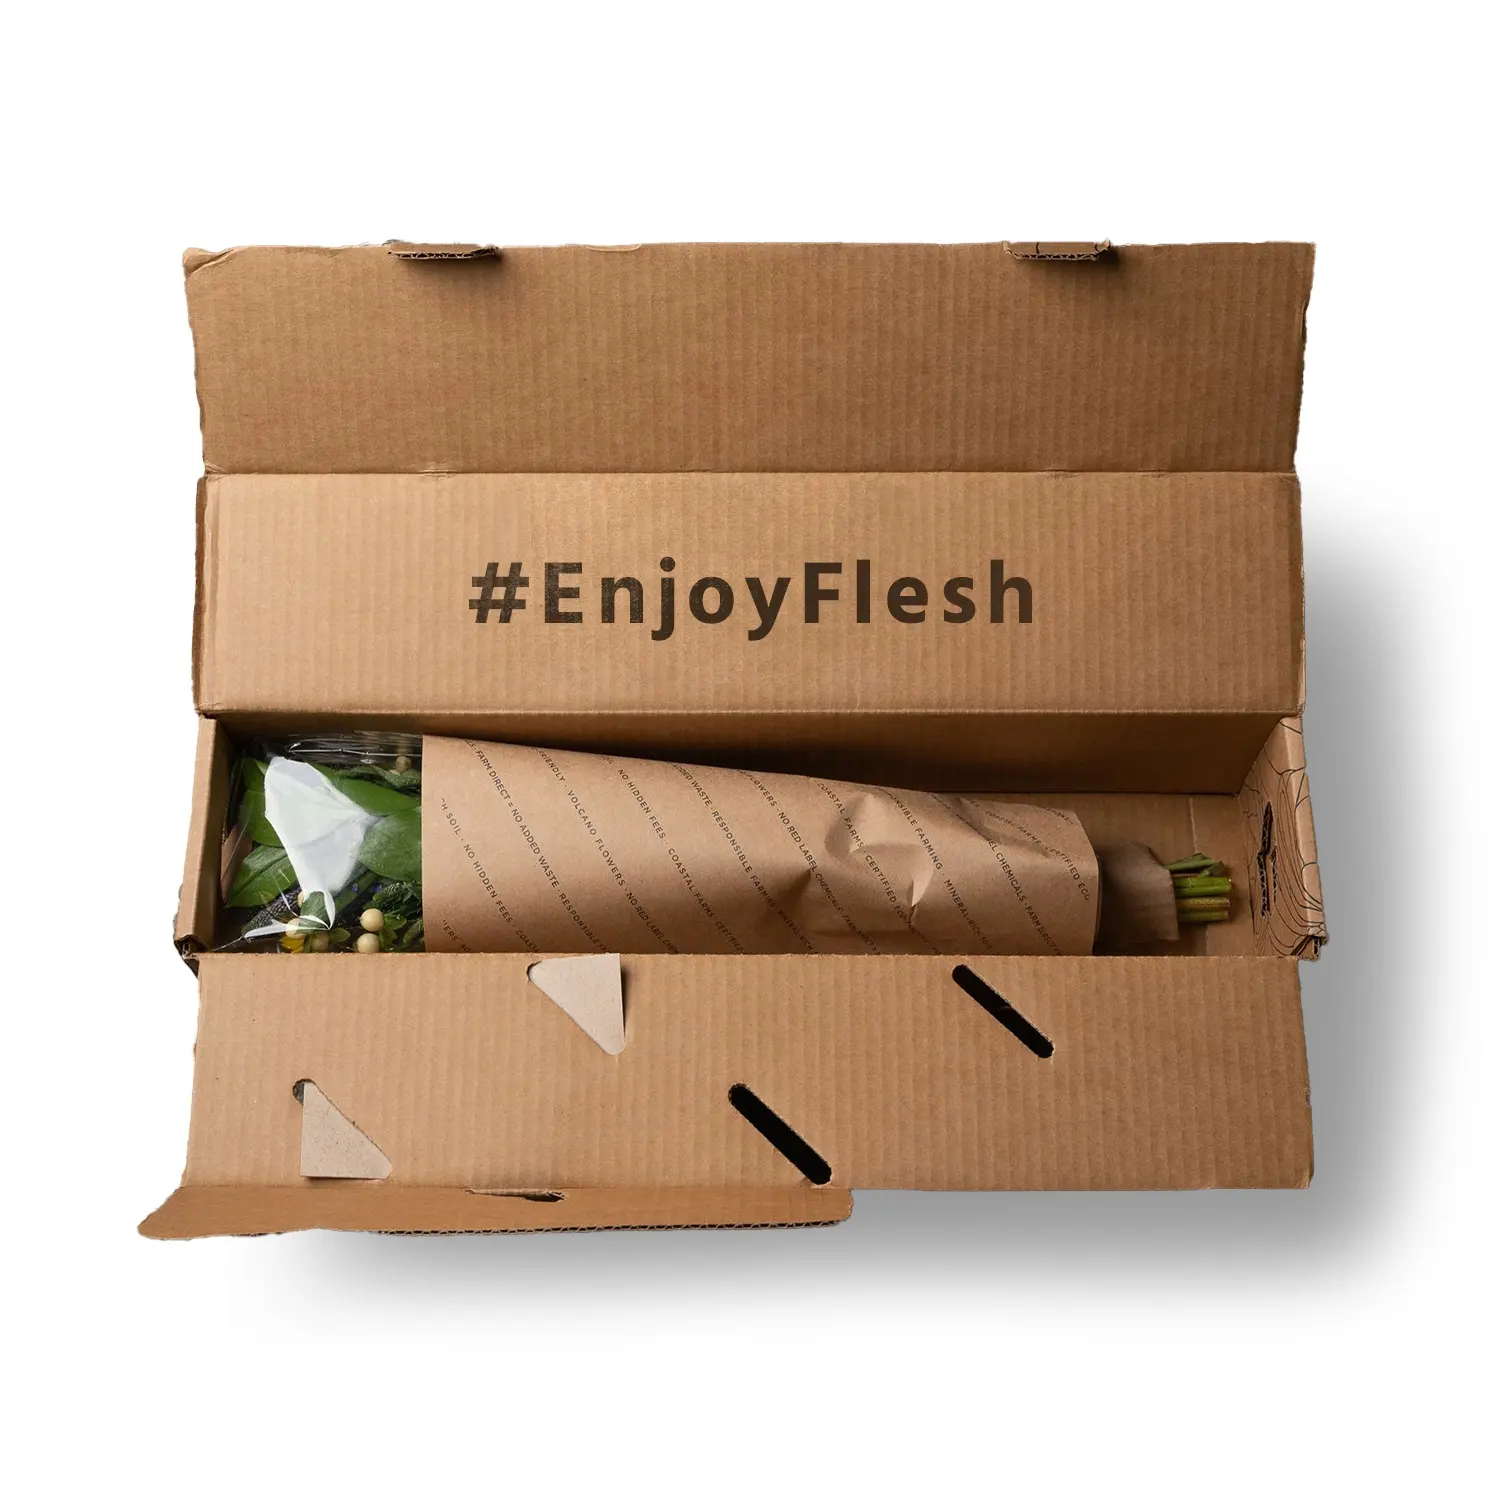 Embalaje ecológico de diseño gratuito, caja de envío corrugado a todo Color, personalizada, extremadamente resistente, para flores frescas